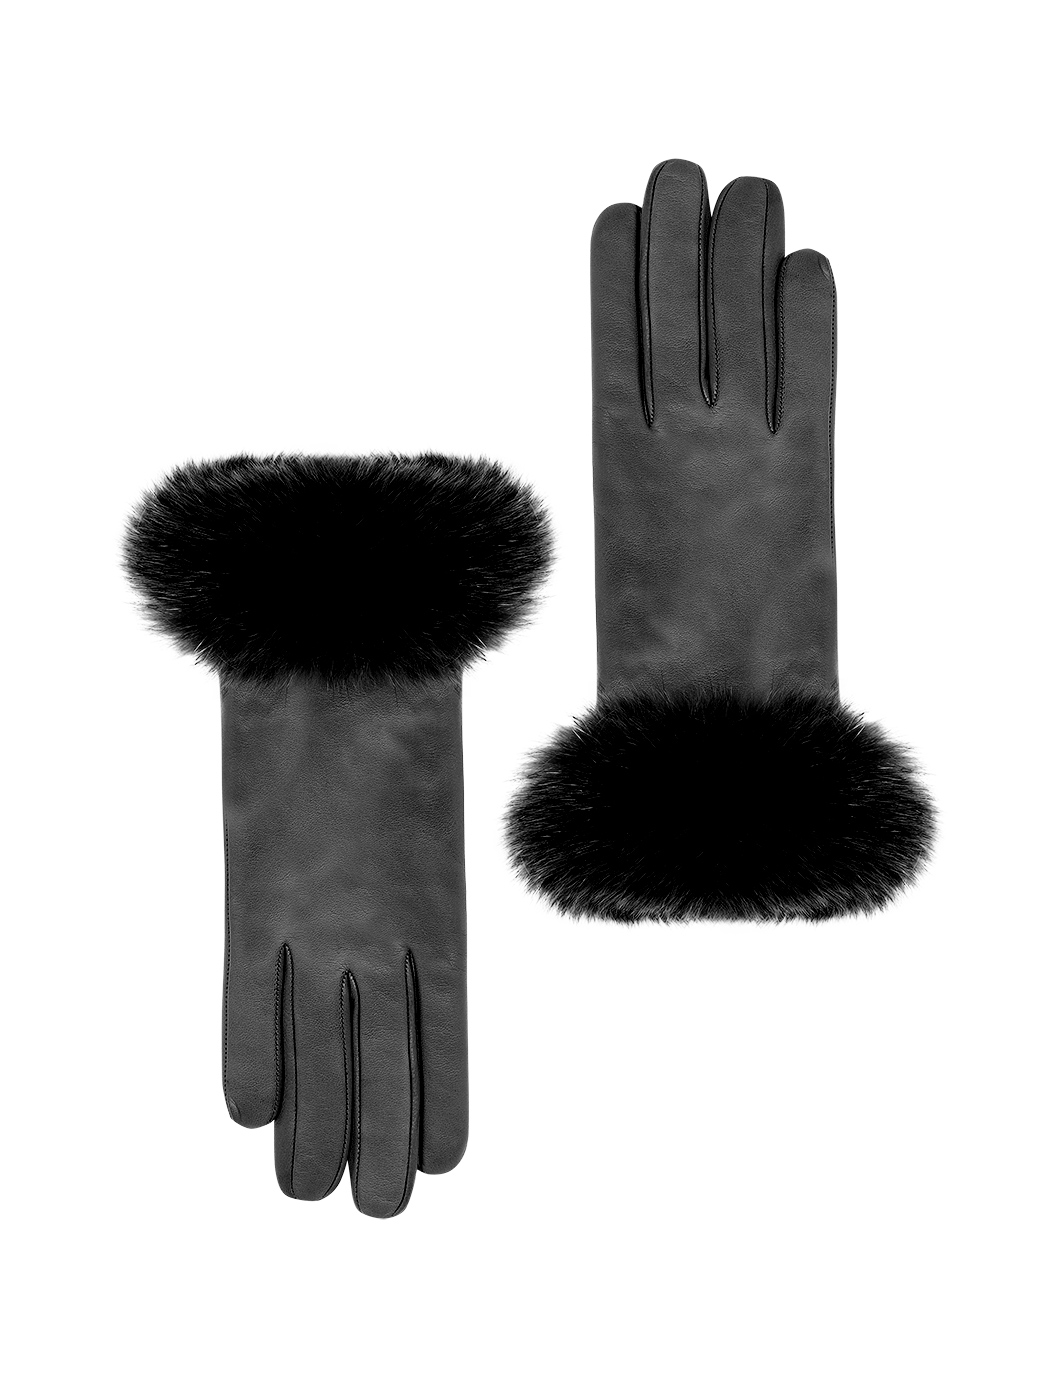 Кожаные перчатки с манжетами из лисьего меха черного цвета